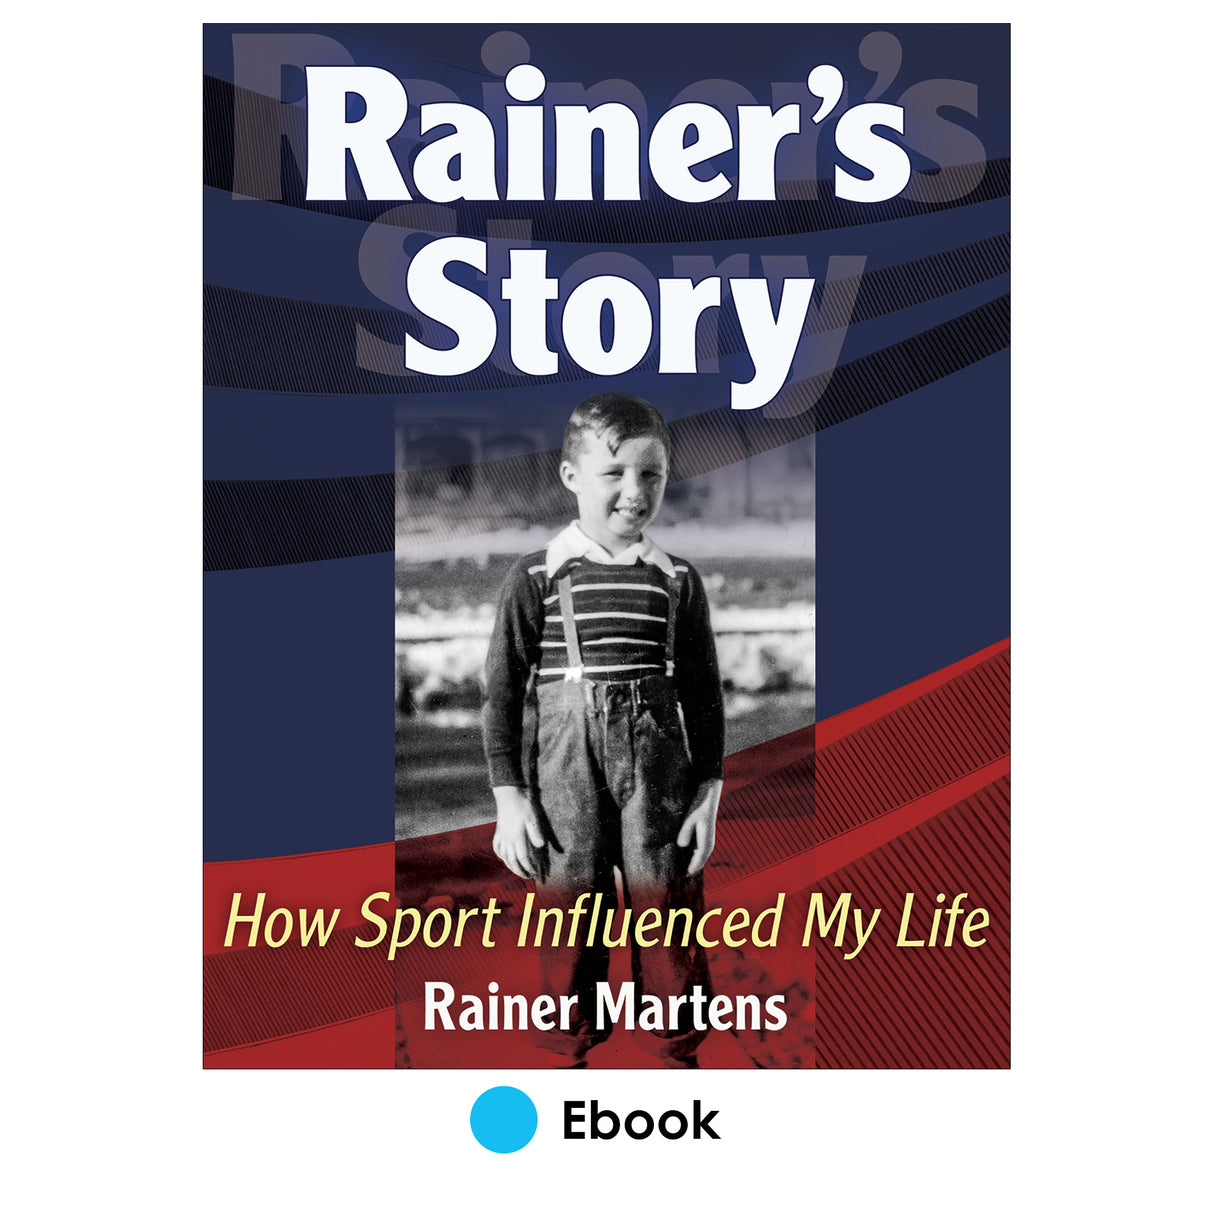 Rainer's Story